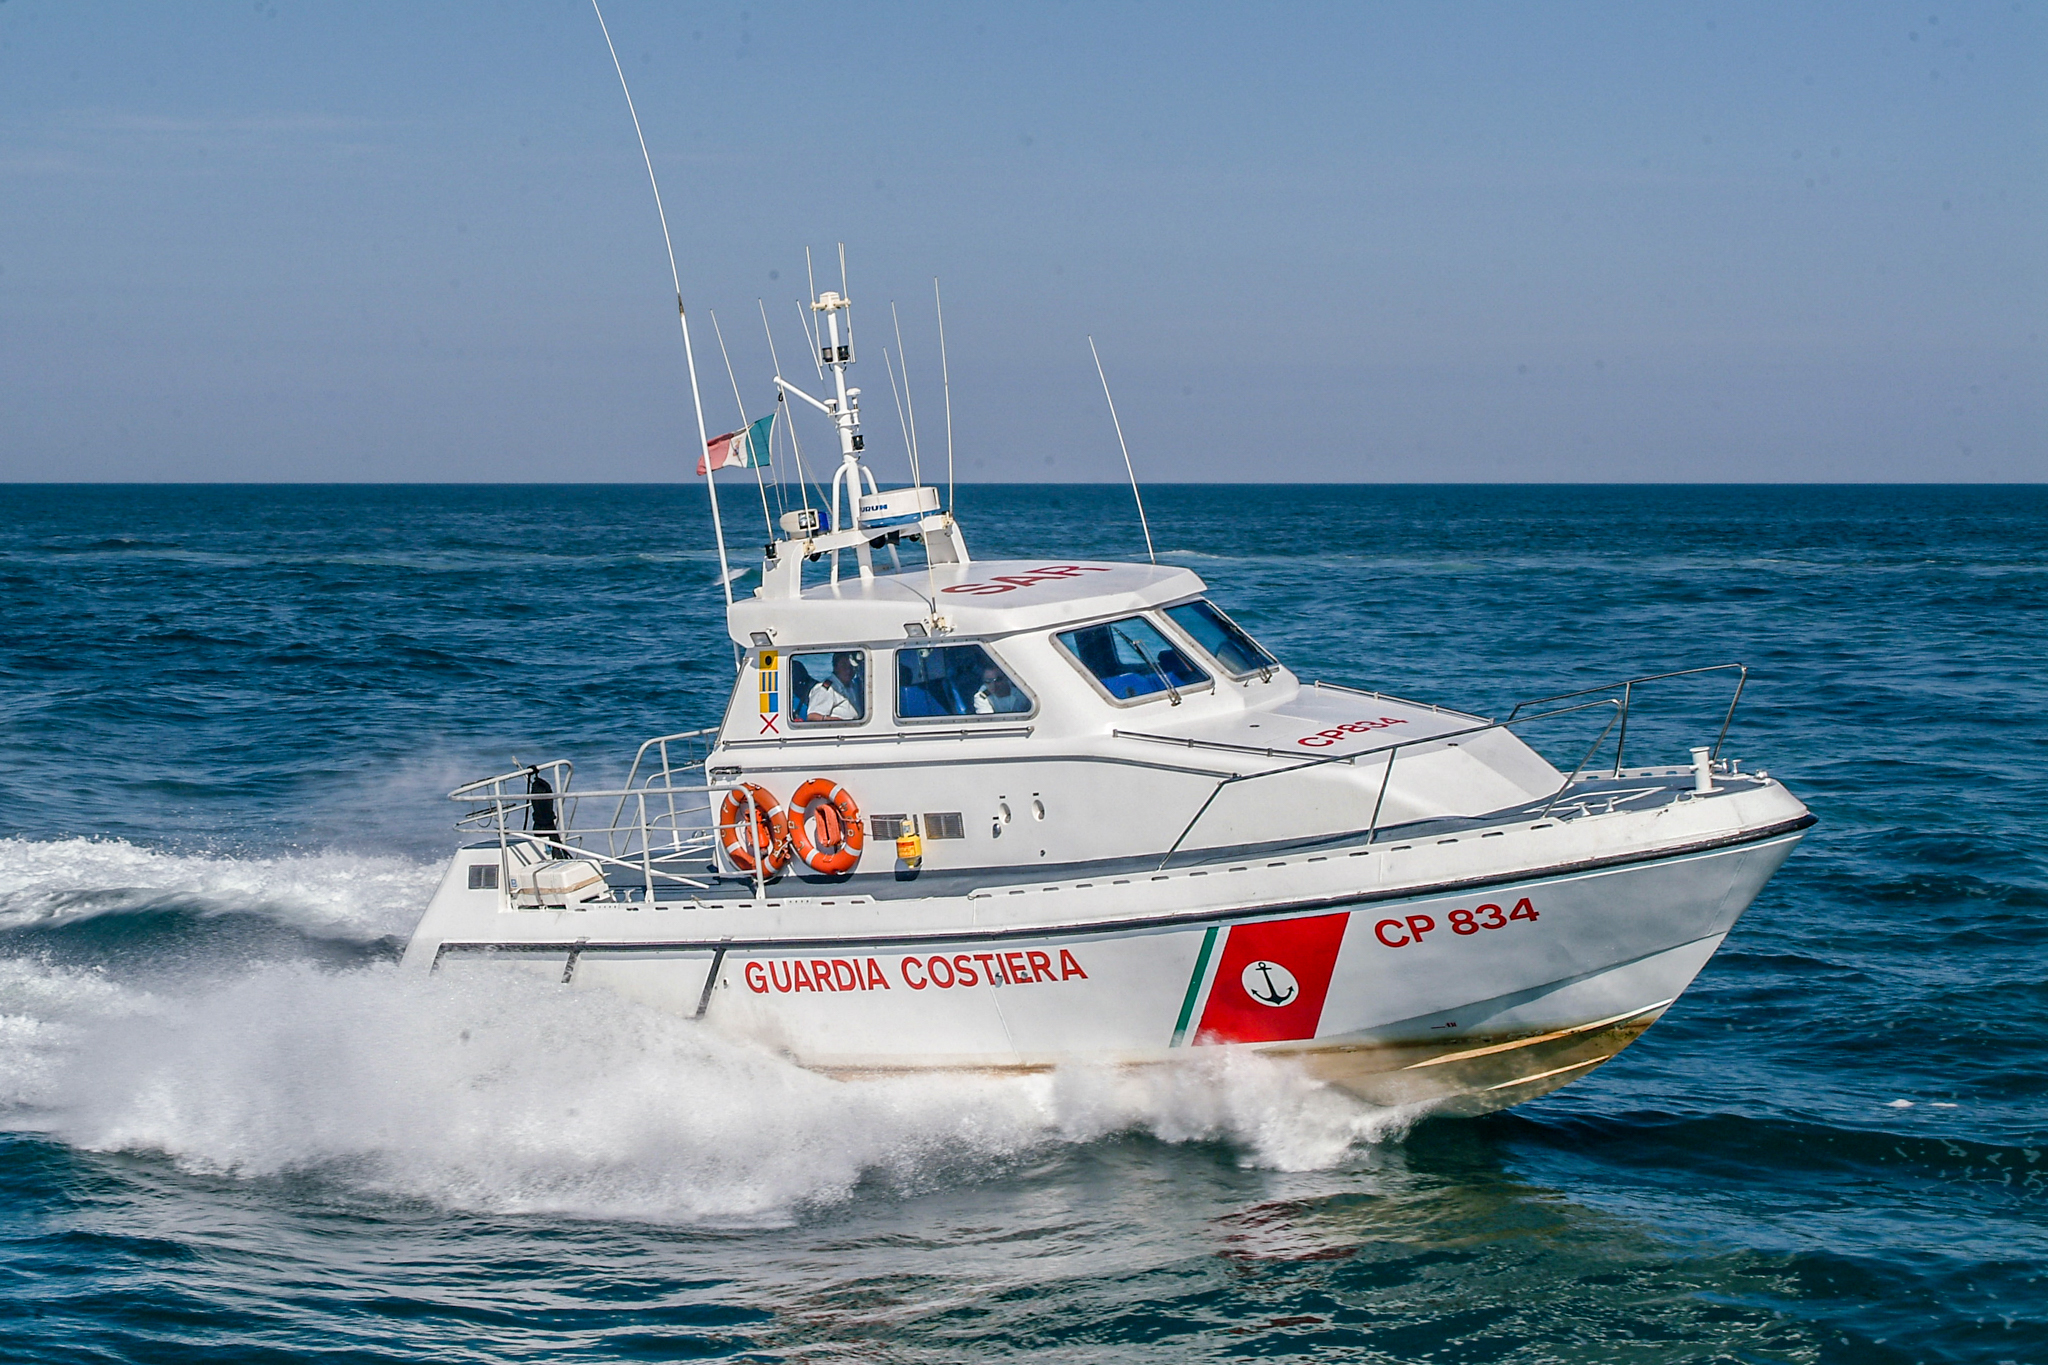 Incendio a bordo di un natante, due ustionati: la Guardia Costiera salva 4 persone